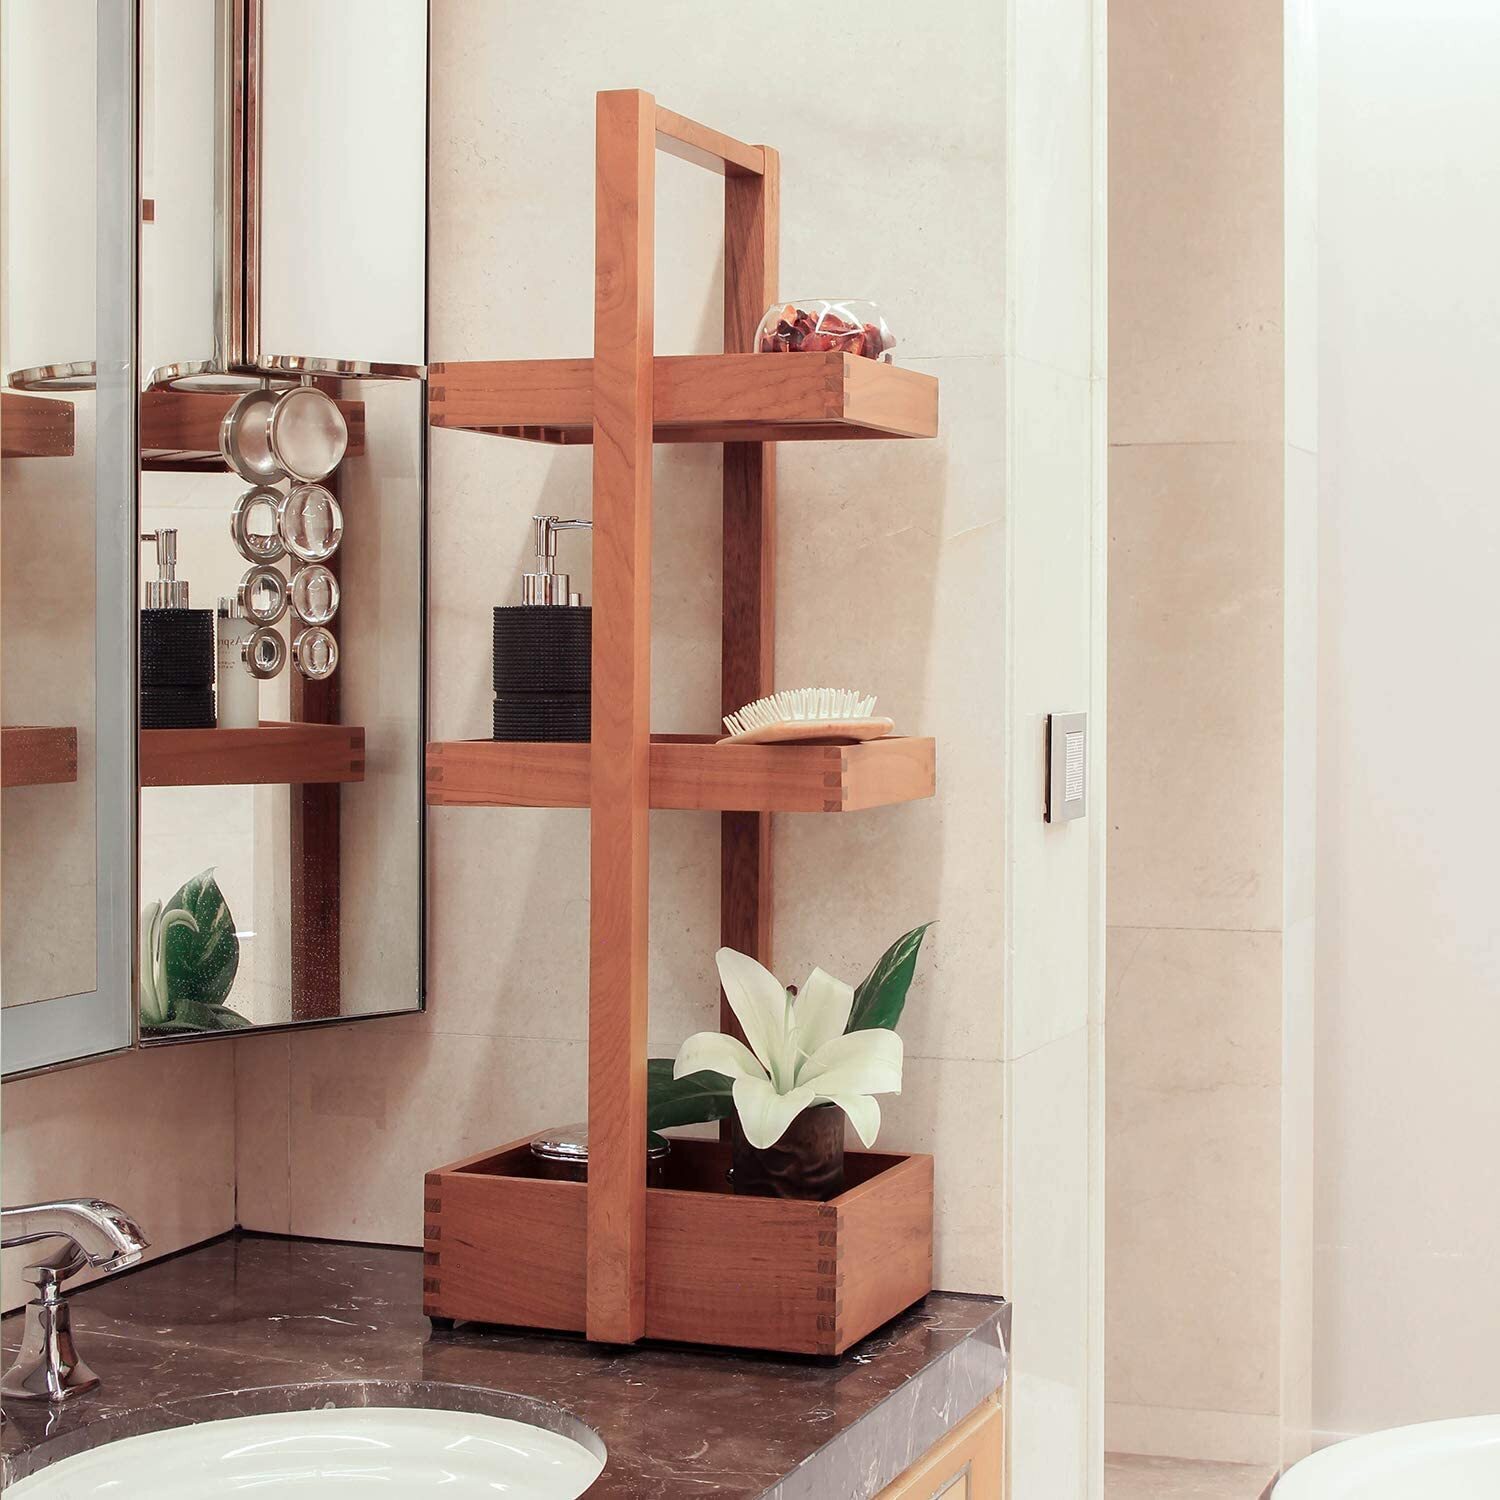 Teak shower shelves with raised edges